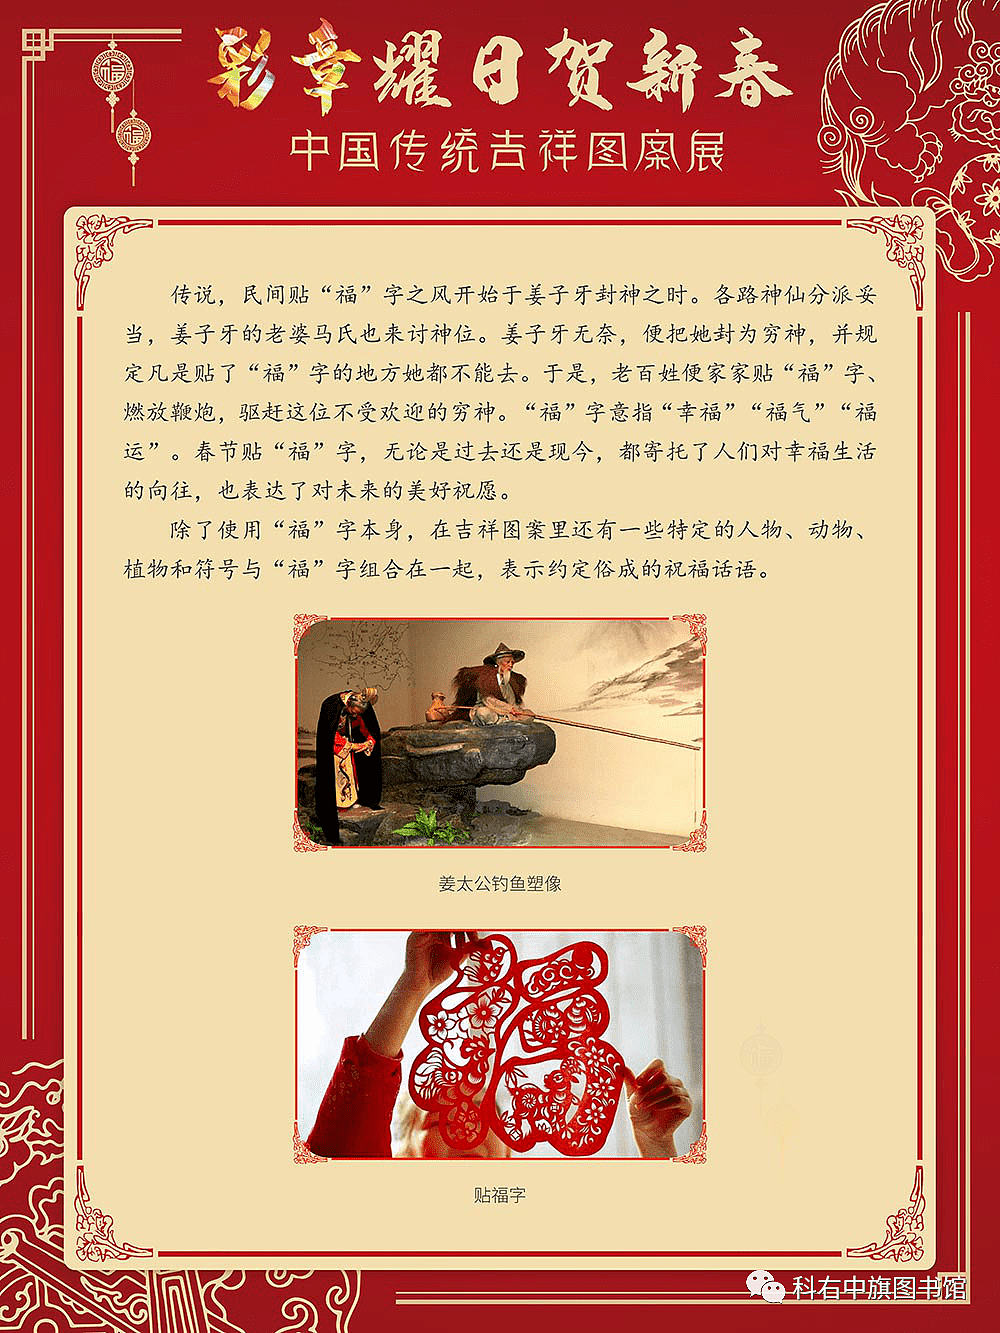 科尔沁右翼中旗图书馆线上展览丨彩章耀日贺新春——中国传统吉祥图案展 - 4